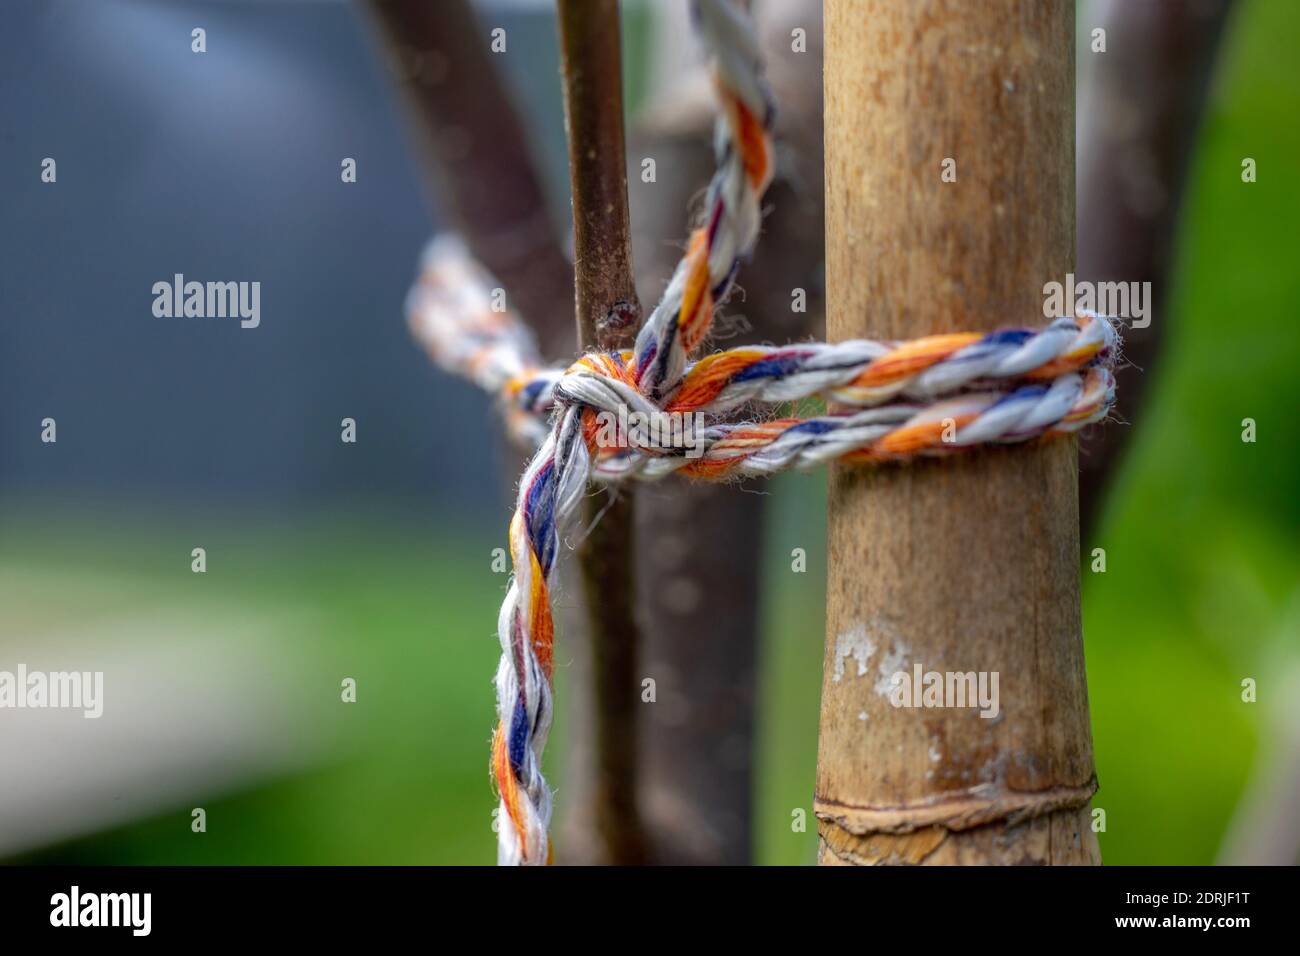 Close-up von Seil gebunden auf hölzernen Pfosten Stockfotografie - Alamy